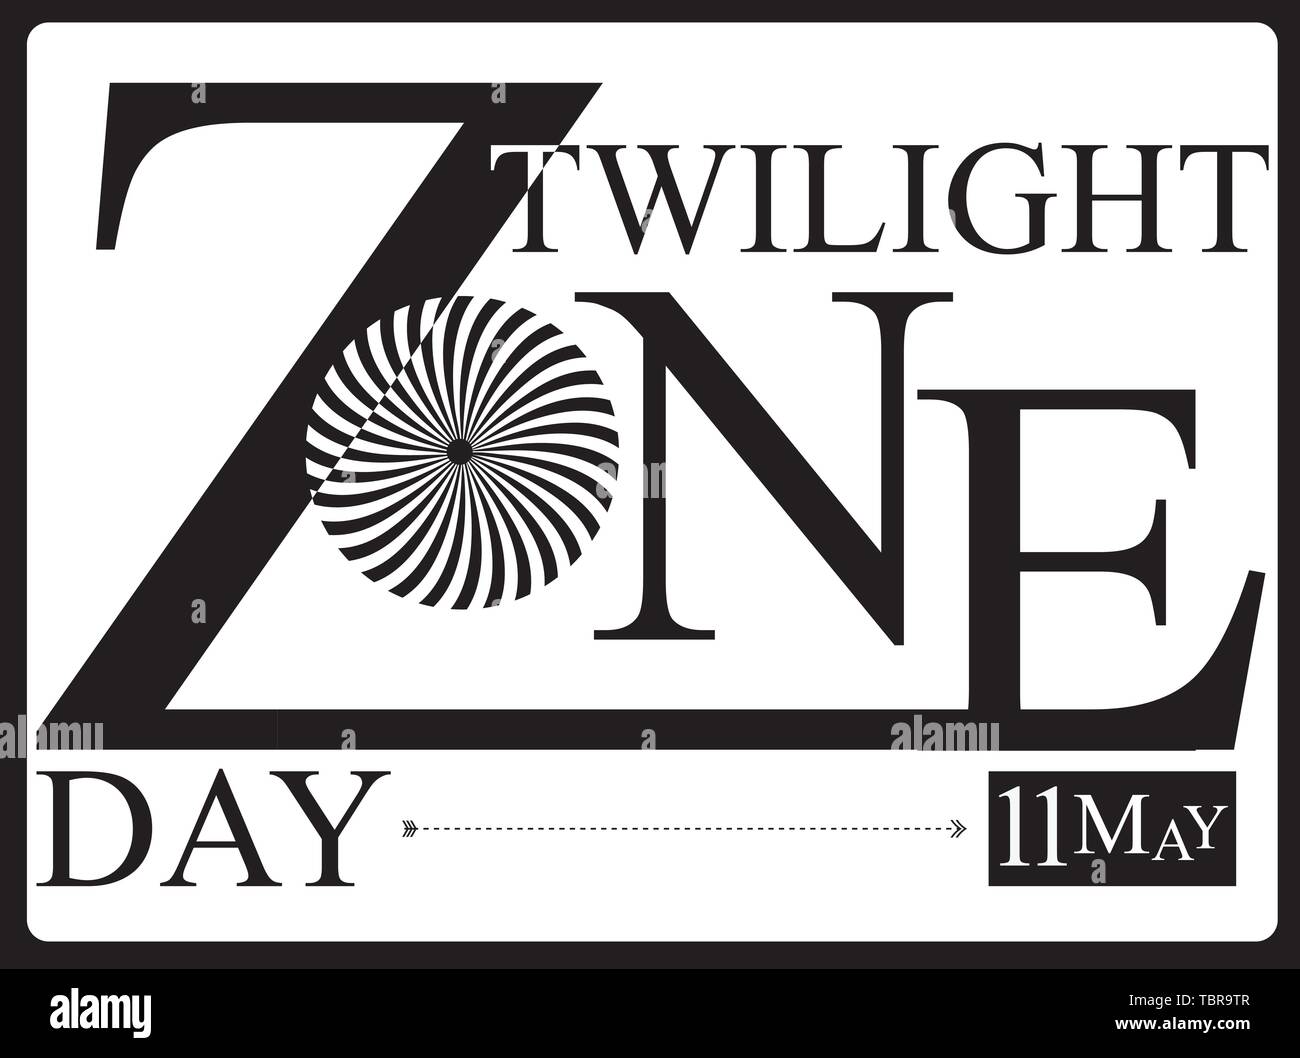 Die festlichen Tag der 11. Mai ist Twilight Zone Tag. Vector Illustration für Datum. Stock Vektor